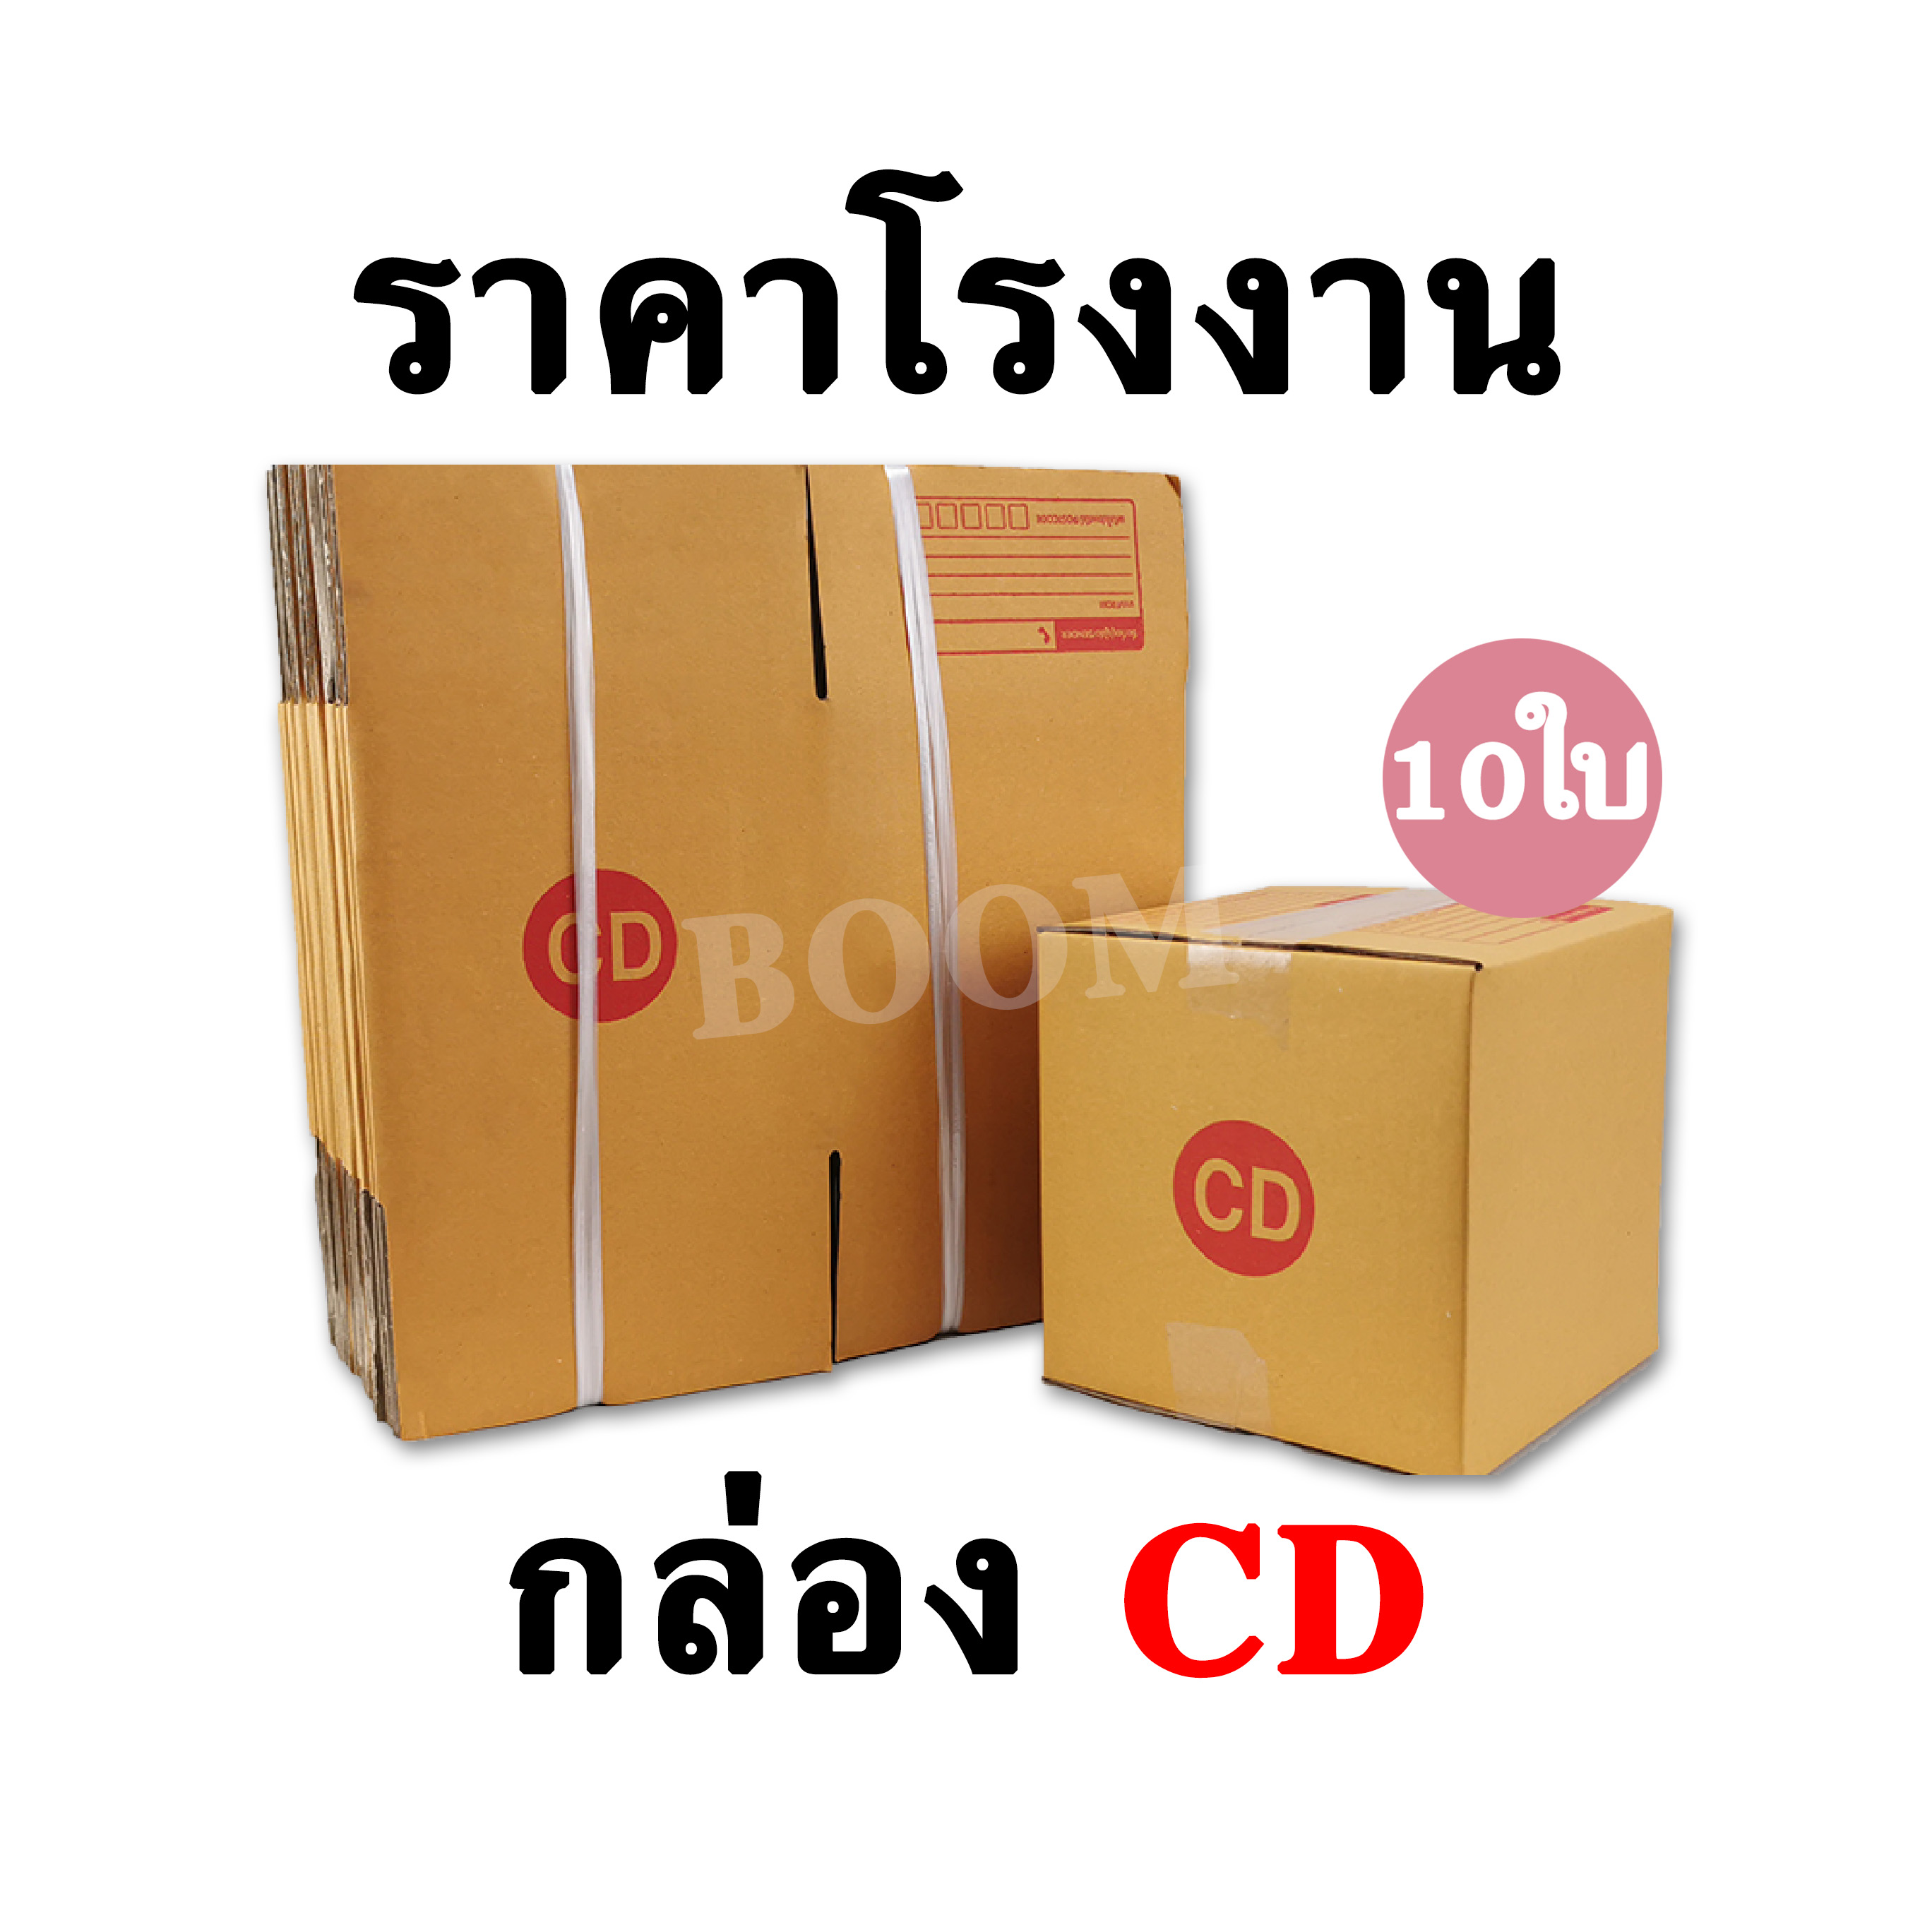 กล่องไปรษณีย์ กล่องพัสดุ CD (จำนวน 10ใบ) ขนาด 15x15x15ซม.